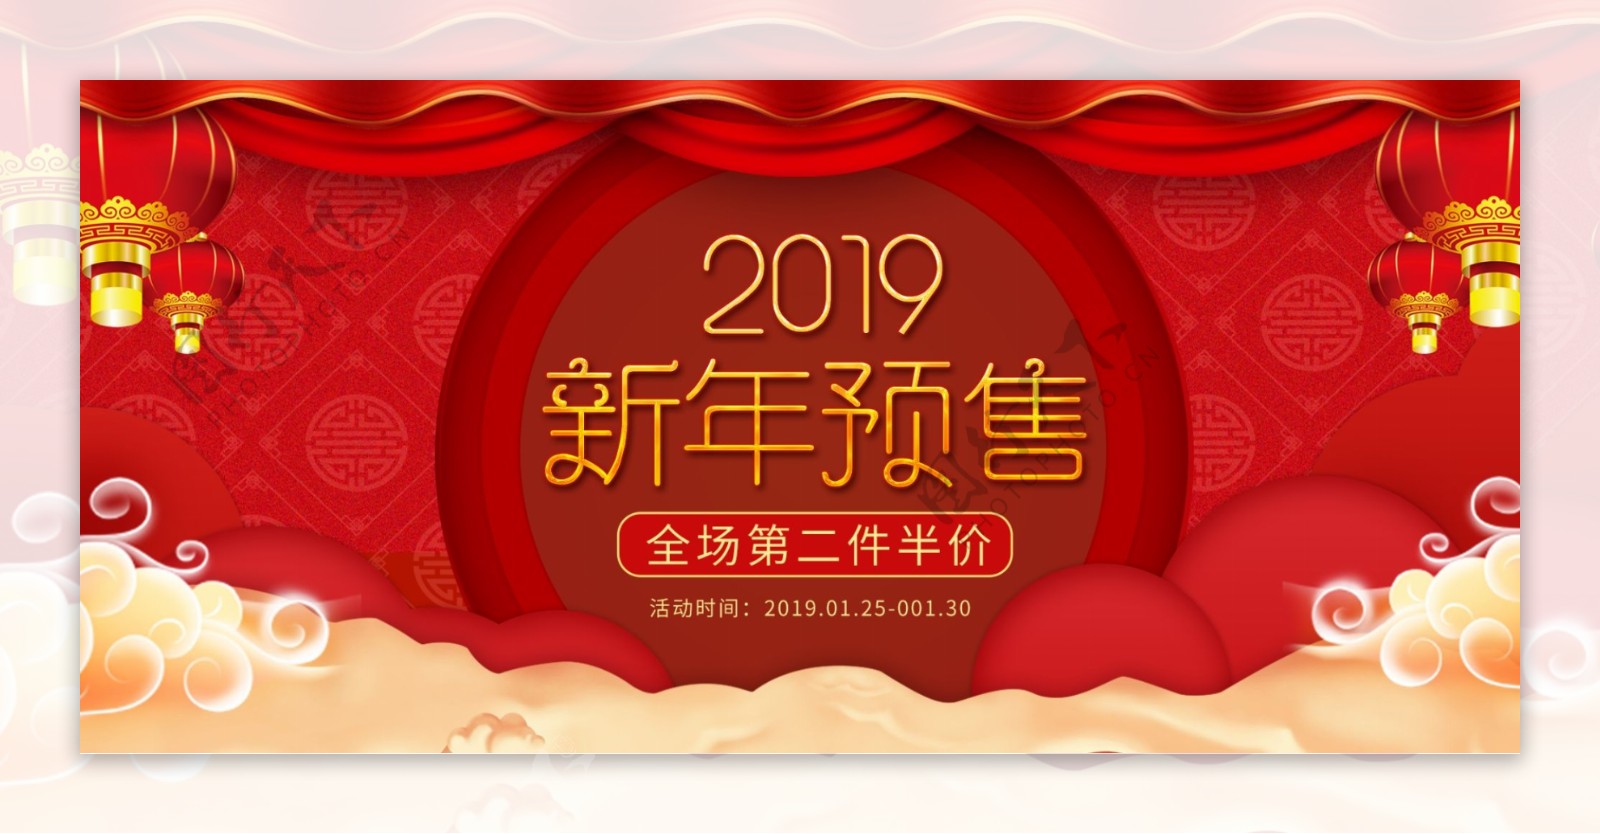 2019新年预售淘宝促销banner